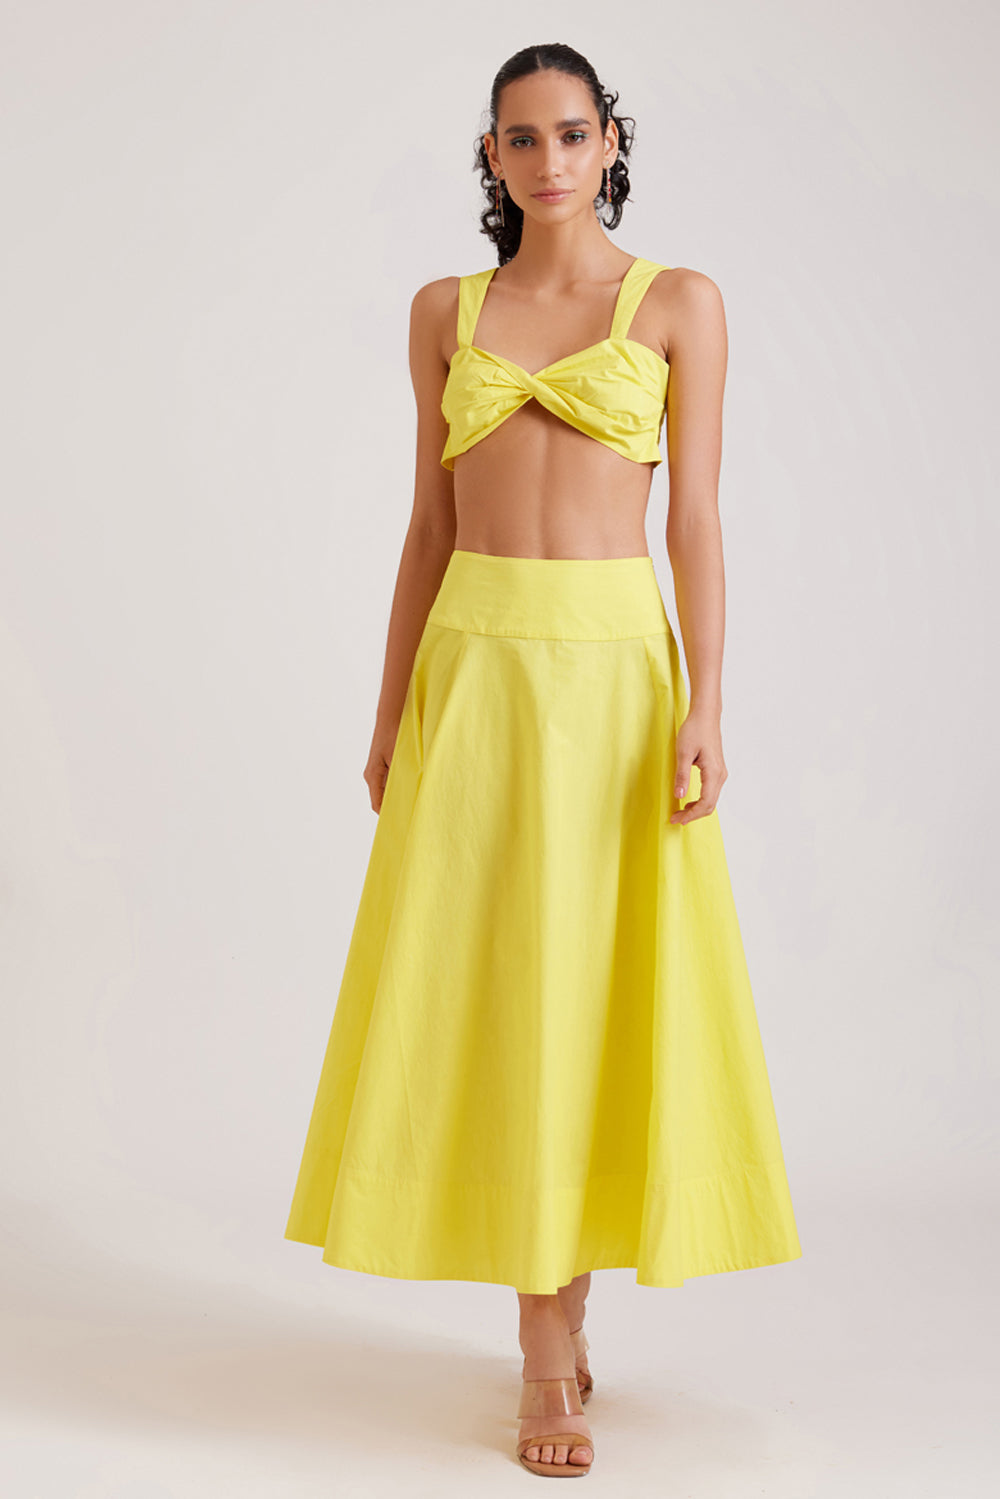 Lemon Maxi Skirt